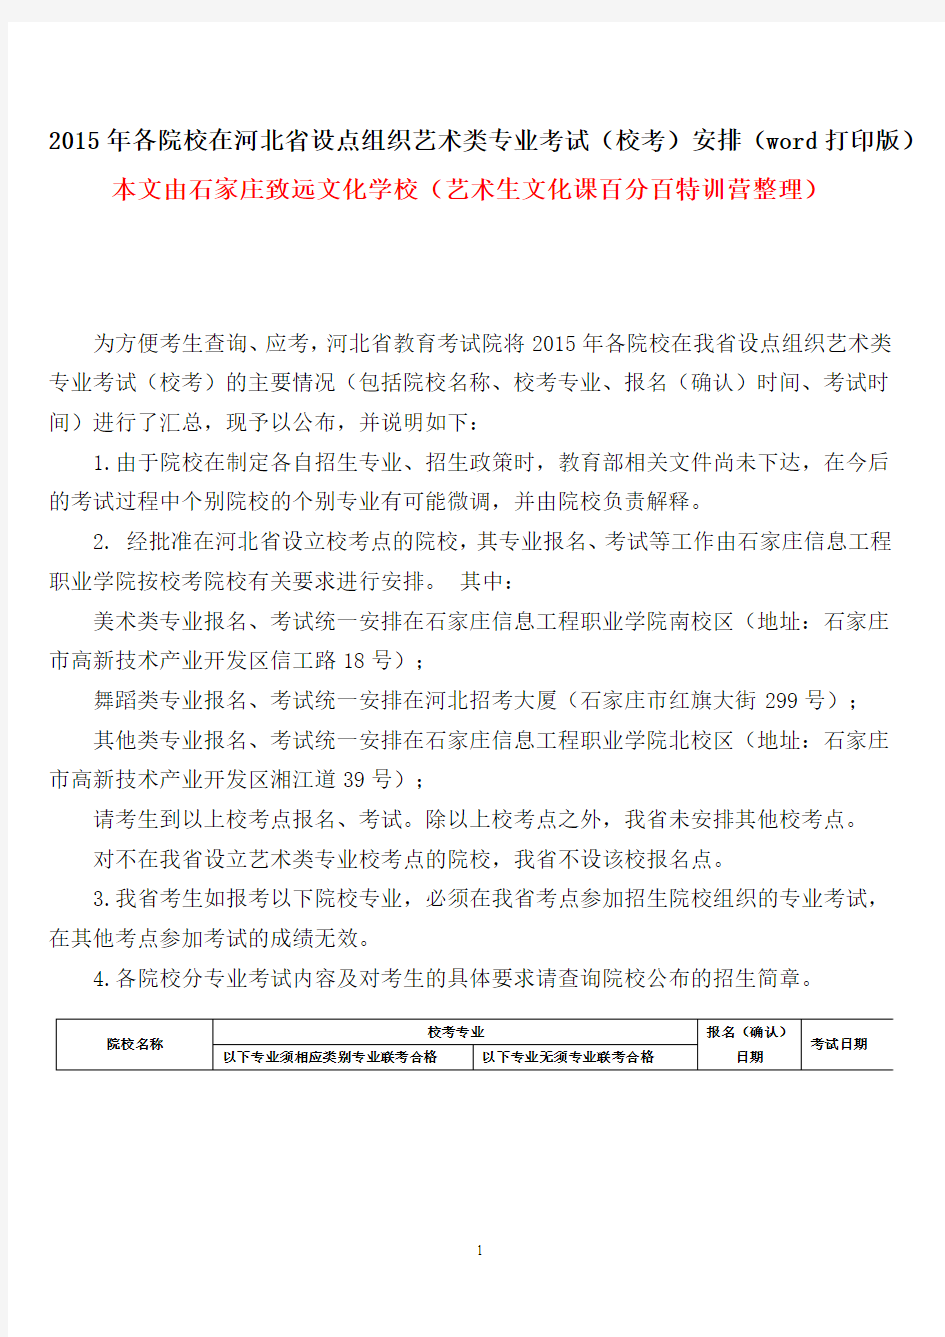 2015年各院校在河北省设点组织艺术类专业考试(校考)安排(word打印版)